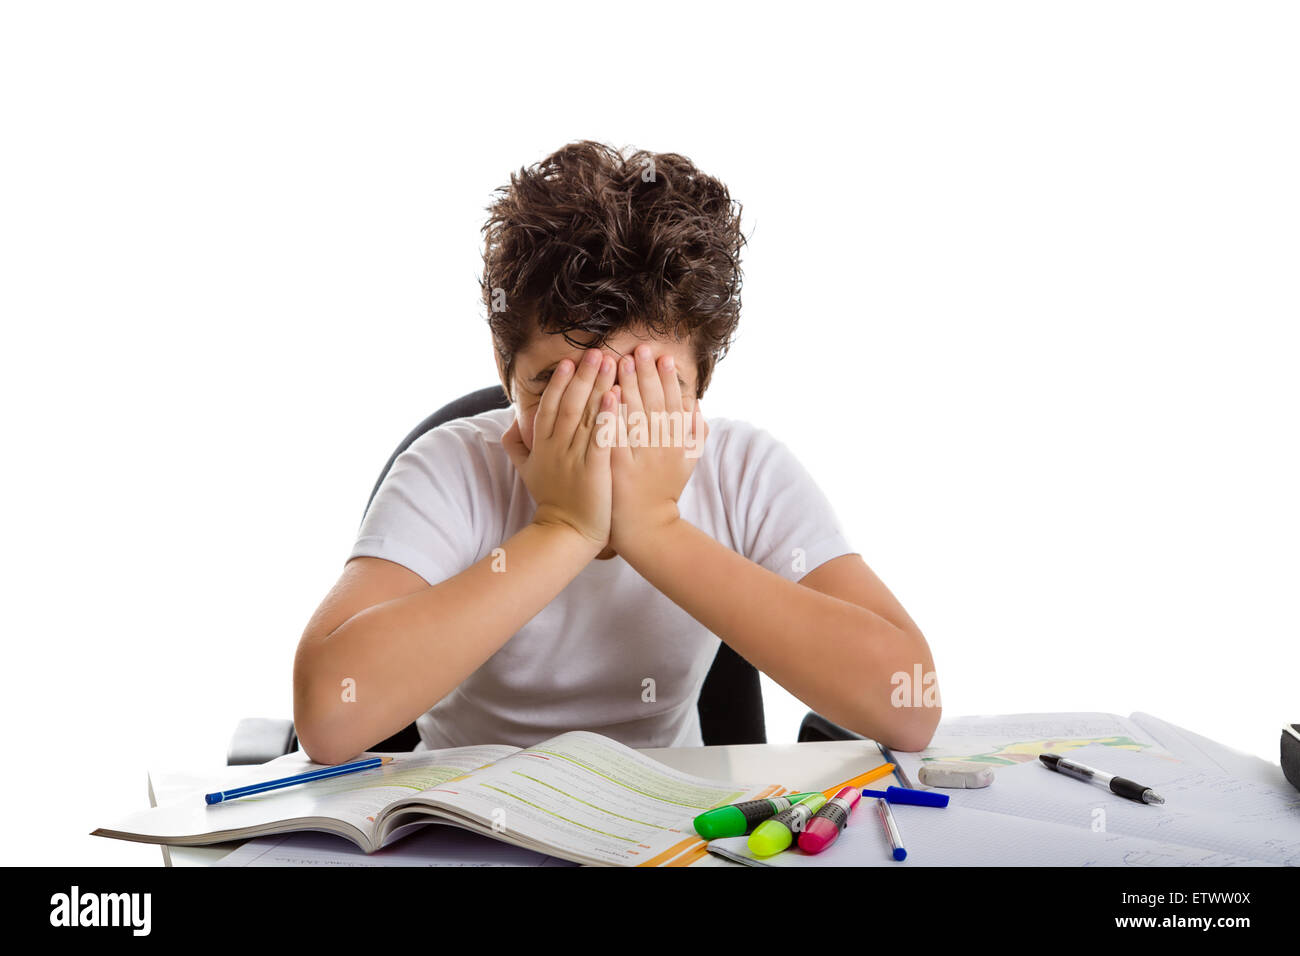 Stanco ragazzo nasconde il suo volto a fare il suo dovere: egli è seduto di fronte a libri,copybooks e matite Foto Stock